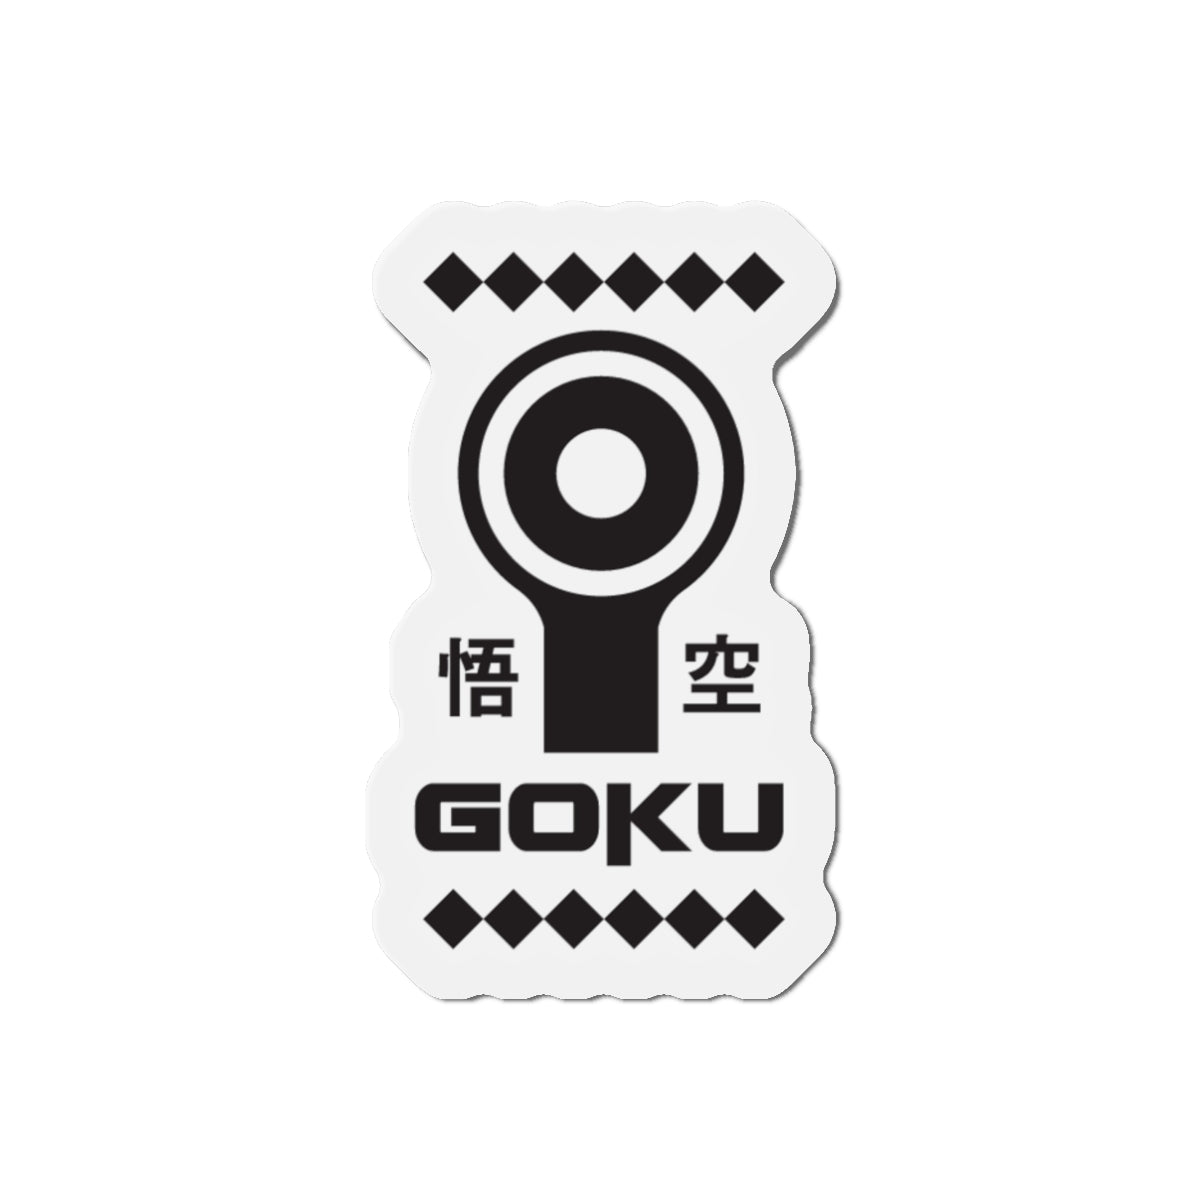 GOKU | Die-Cut Magnets